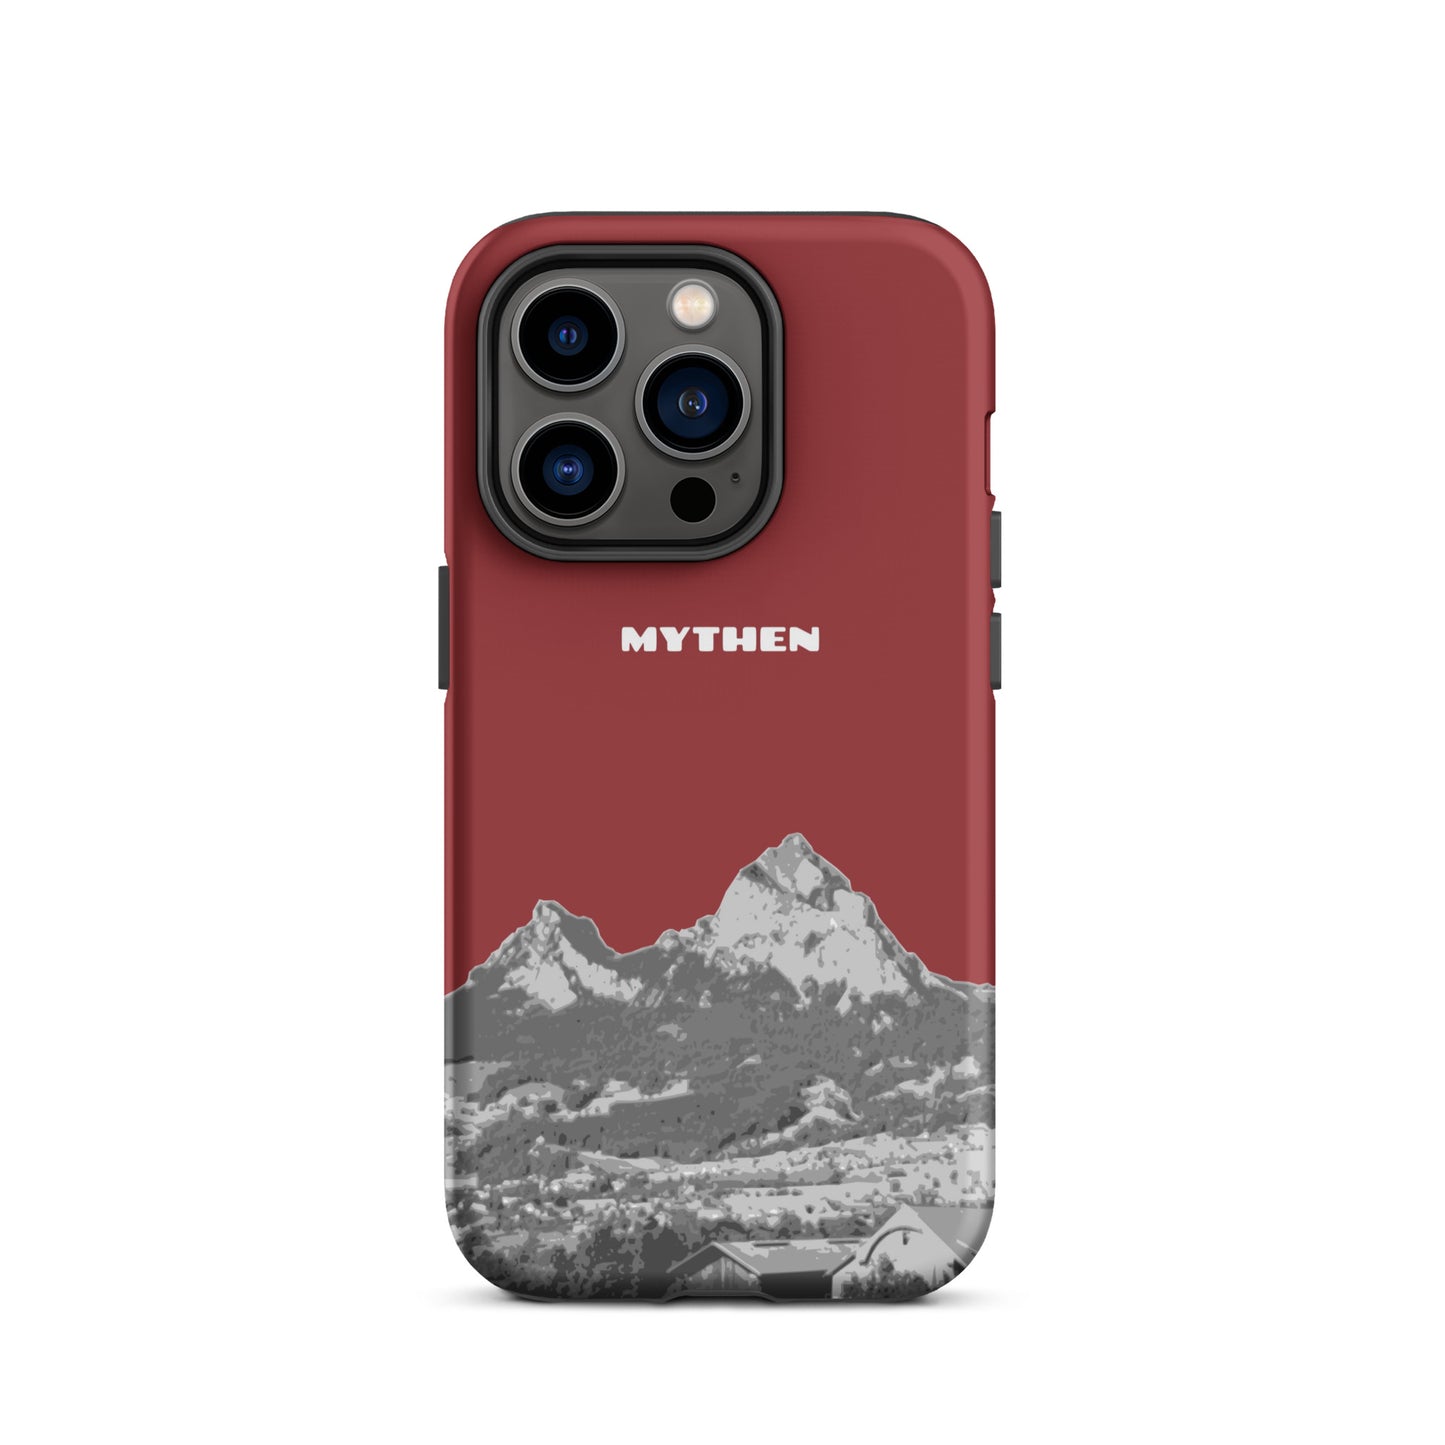 Hülle für das iPhone 14 Pro von Apple in der Farbe Rot, die den Grossen Mythen und den Kleinen Mythen bei Schwyz zeigt. 